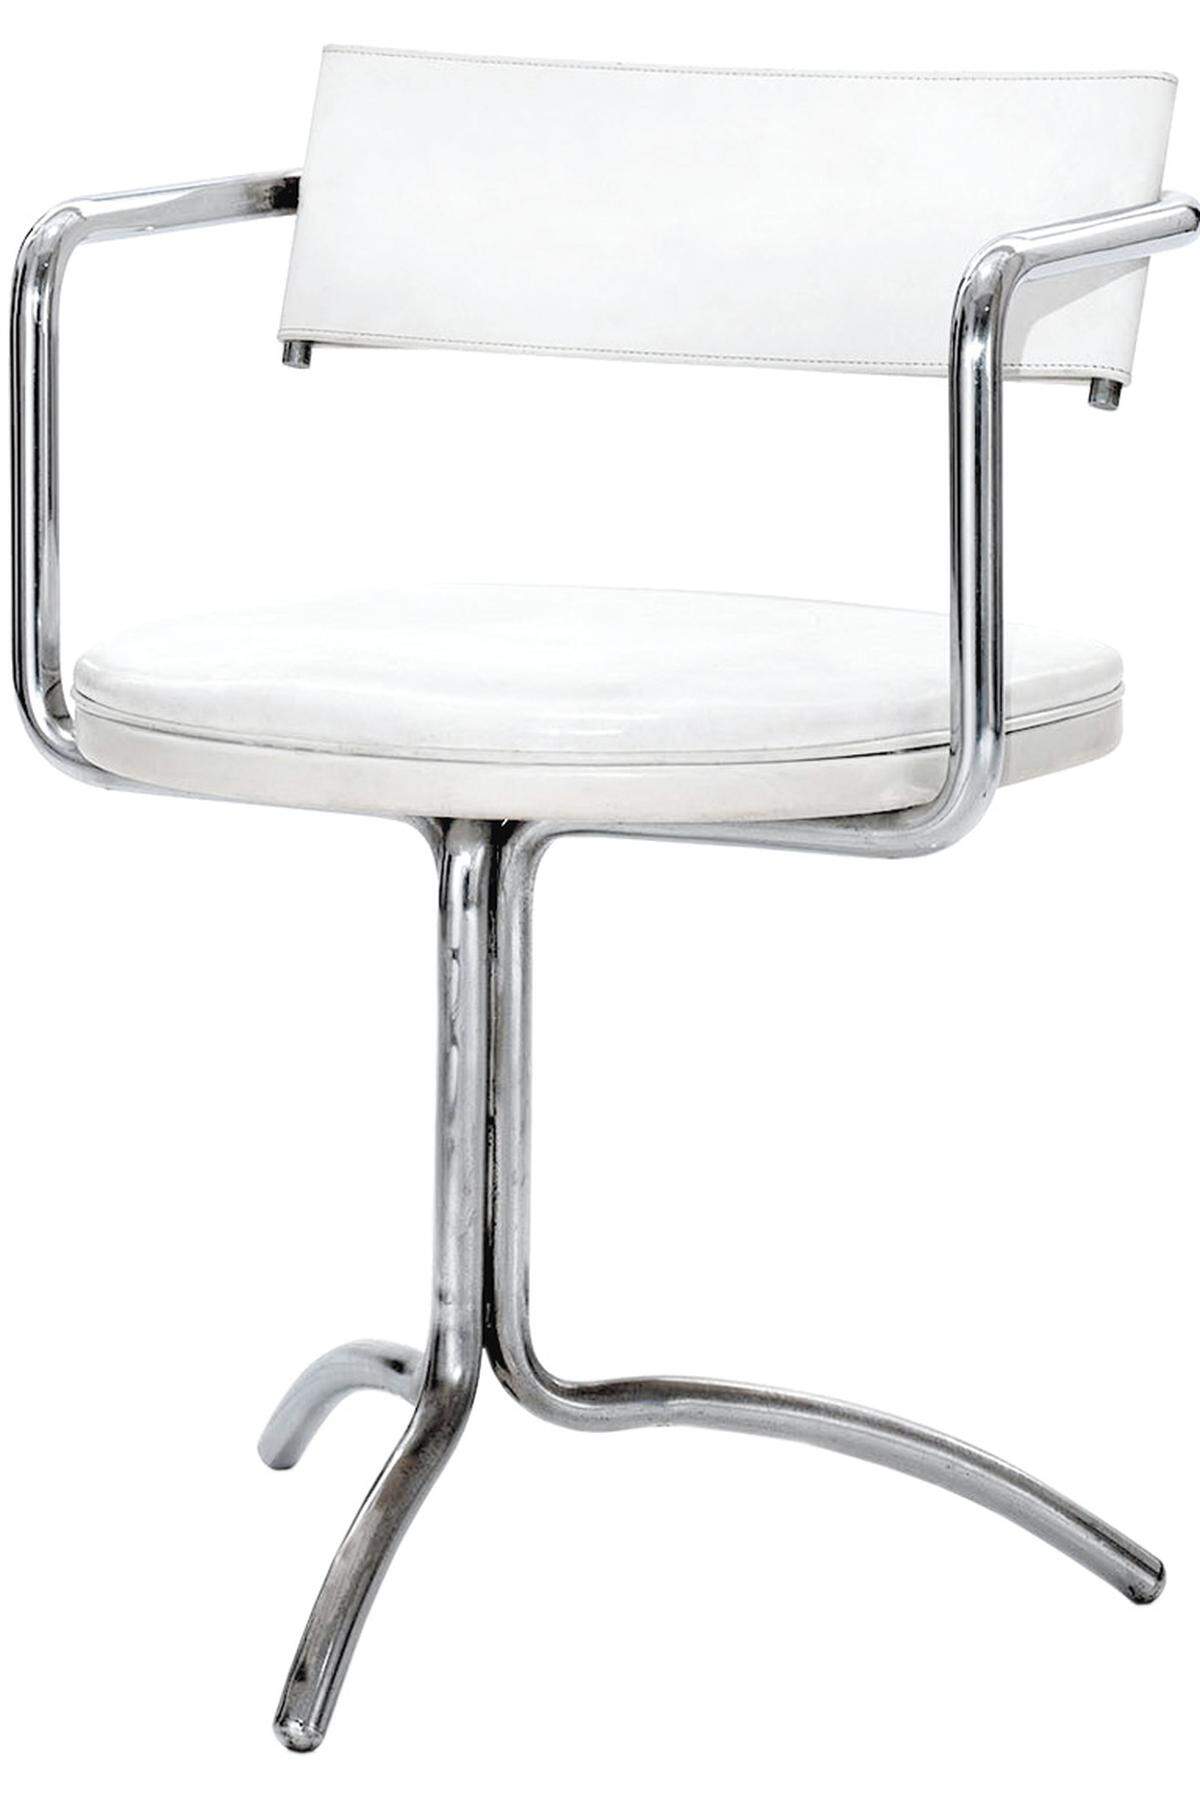 Zwei originale „Mergentime“ Stühle konnten ersteigert werden. Wittmann legt den Stuhl jetzt neu auf.Liegewiese